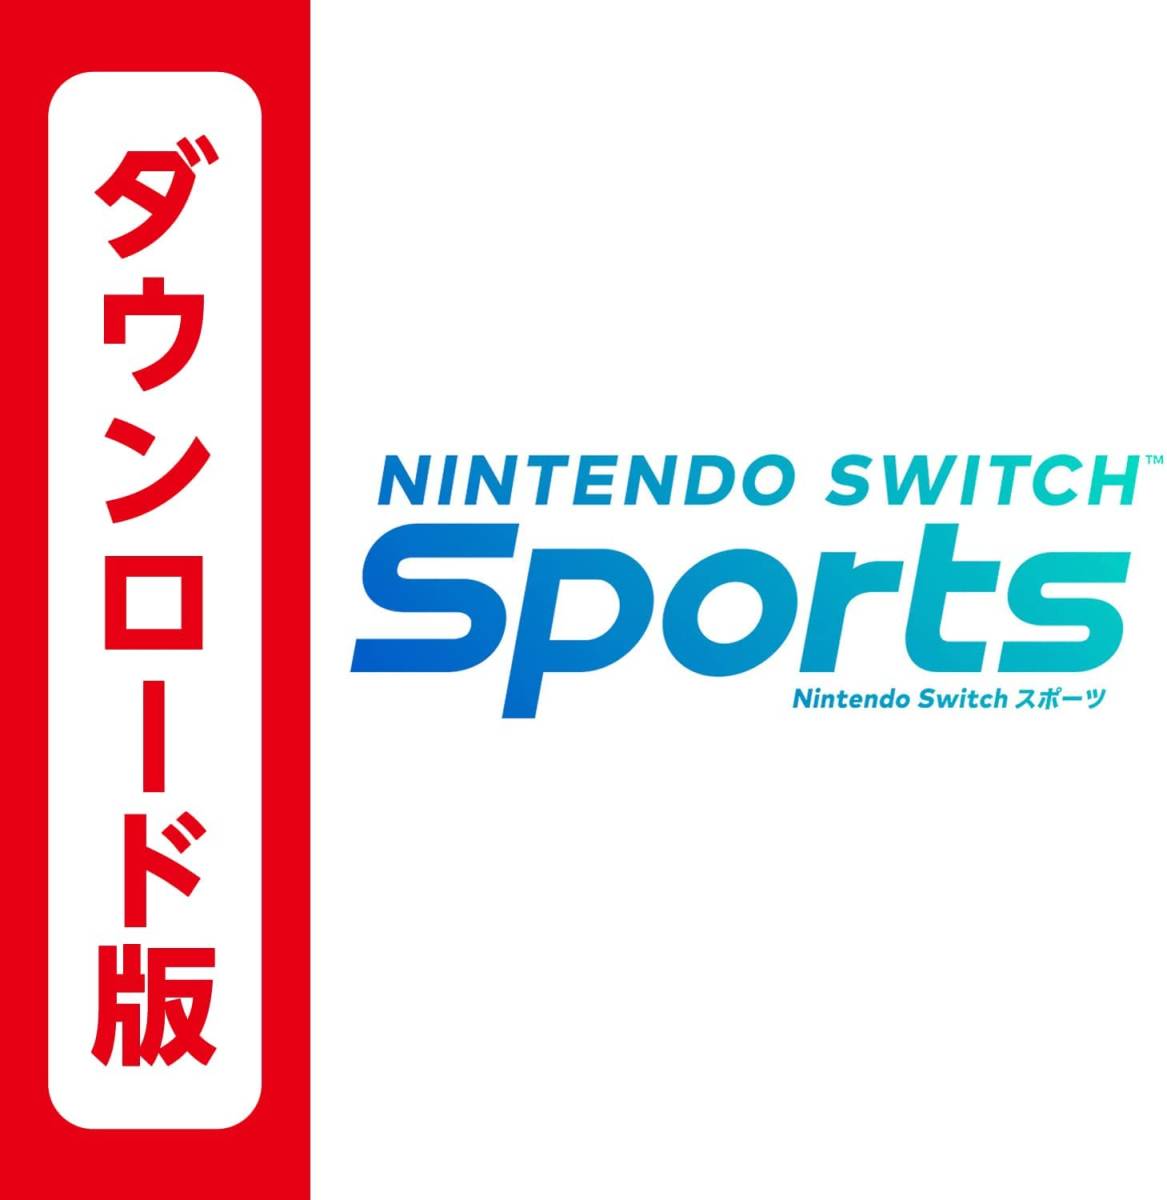 Nintendo Switch Sports ダウンロード版 ニンテンドースイッチスポーツ オンラインコード ニンテンドースイッチ スポーツ 任天堂 スイッチ